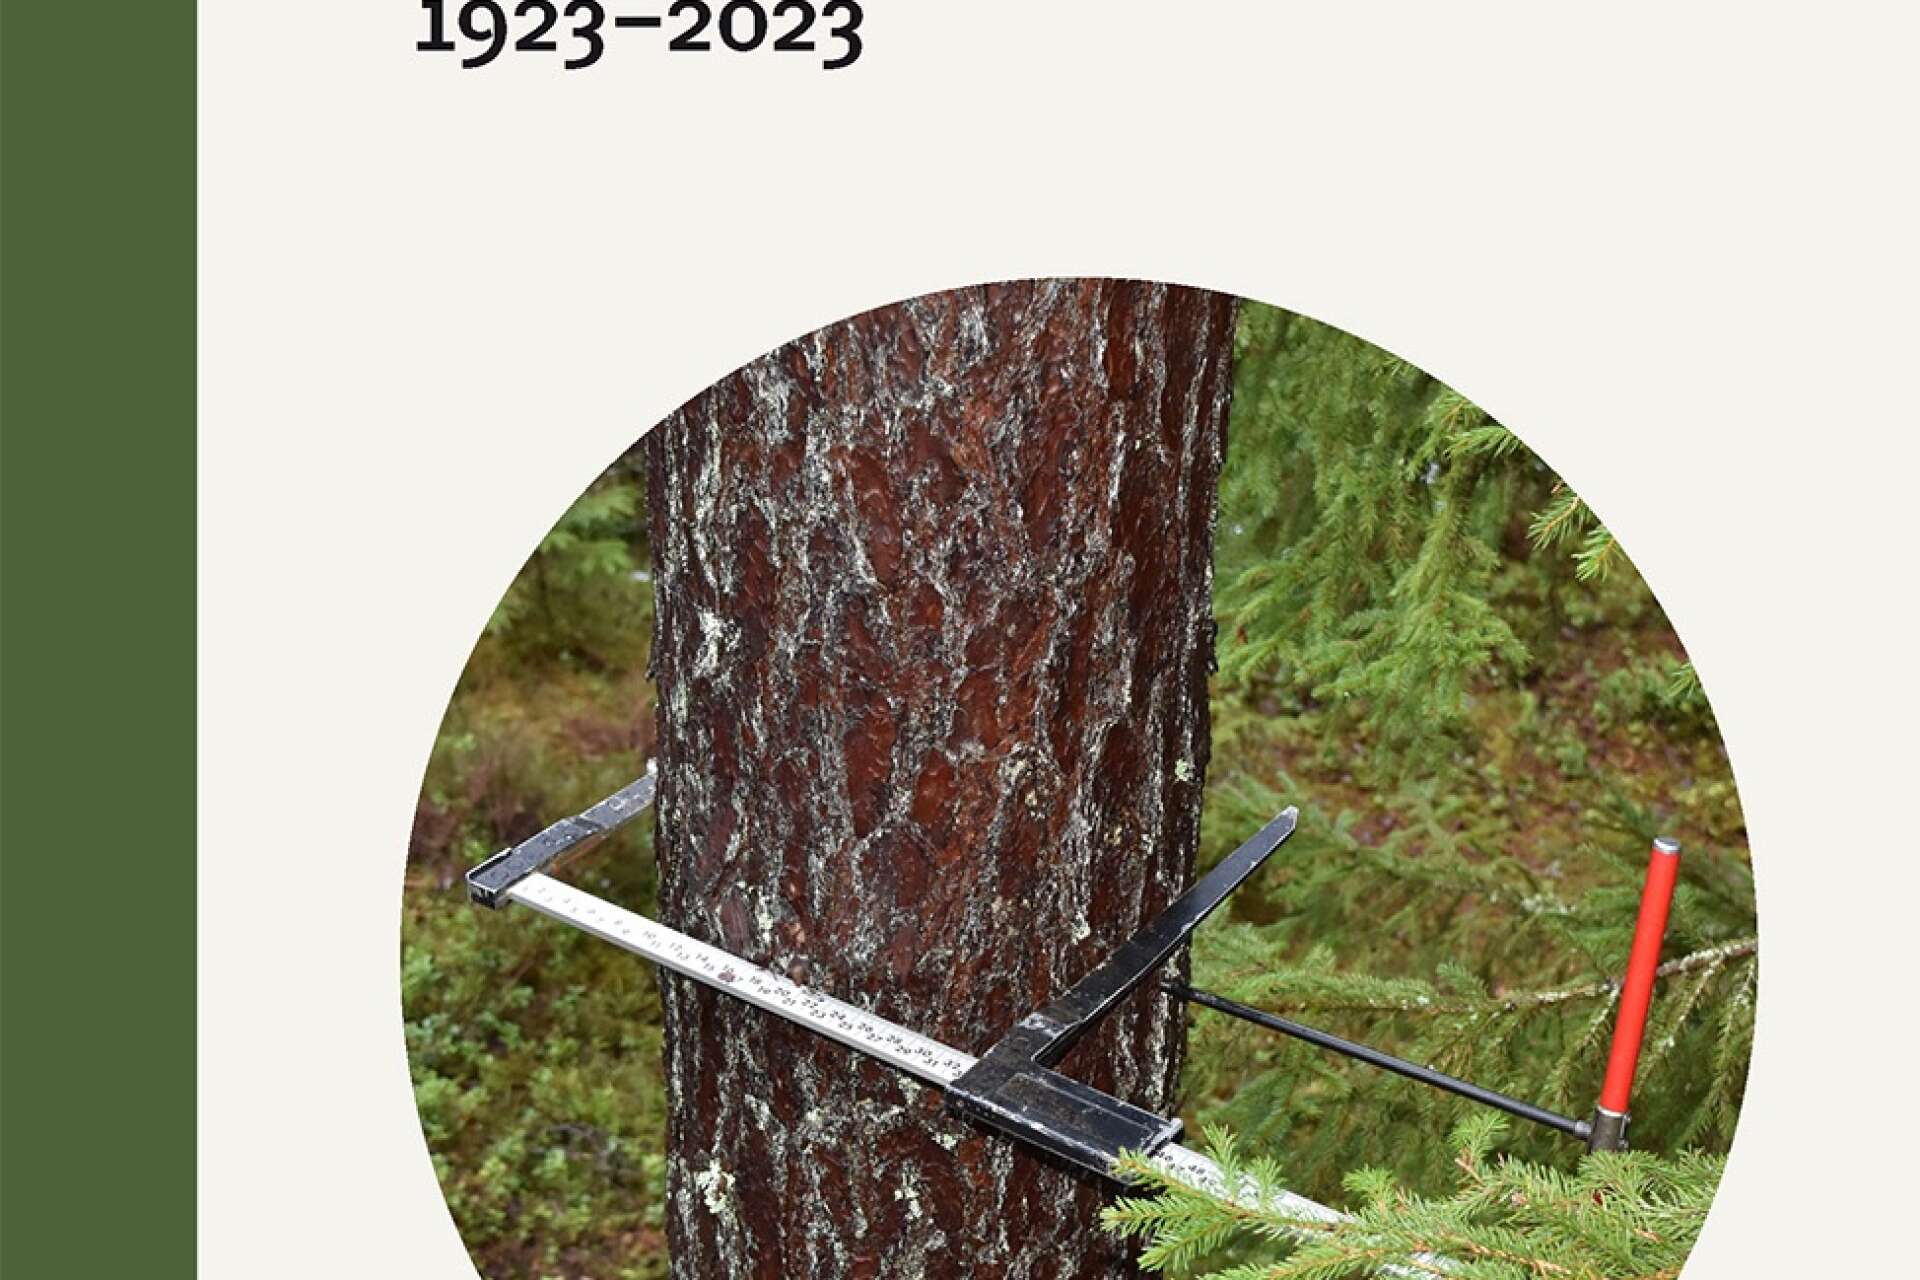 Skogen är under ständig förändring, något som i sig har många förklaringar. Om detta, och mycket annat, går att läsa i Sveriges skogar under 100 år.